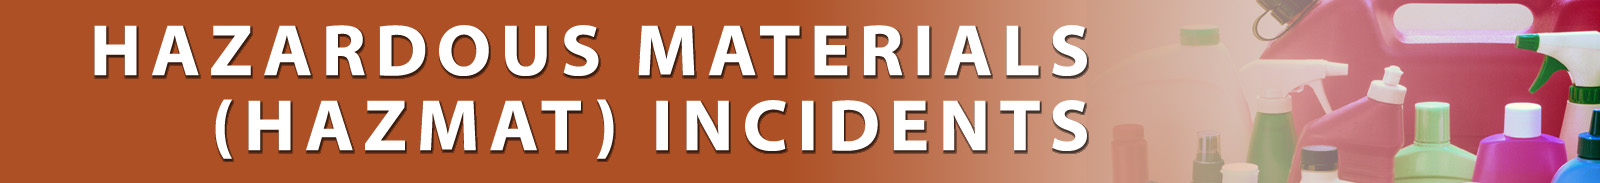 Hazardous Materials Incidents Banner